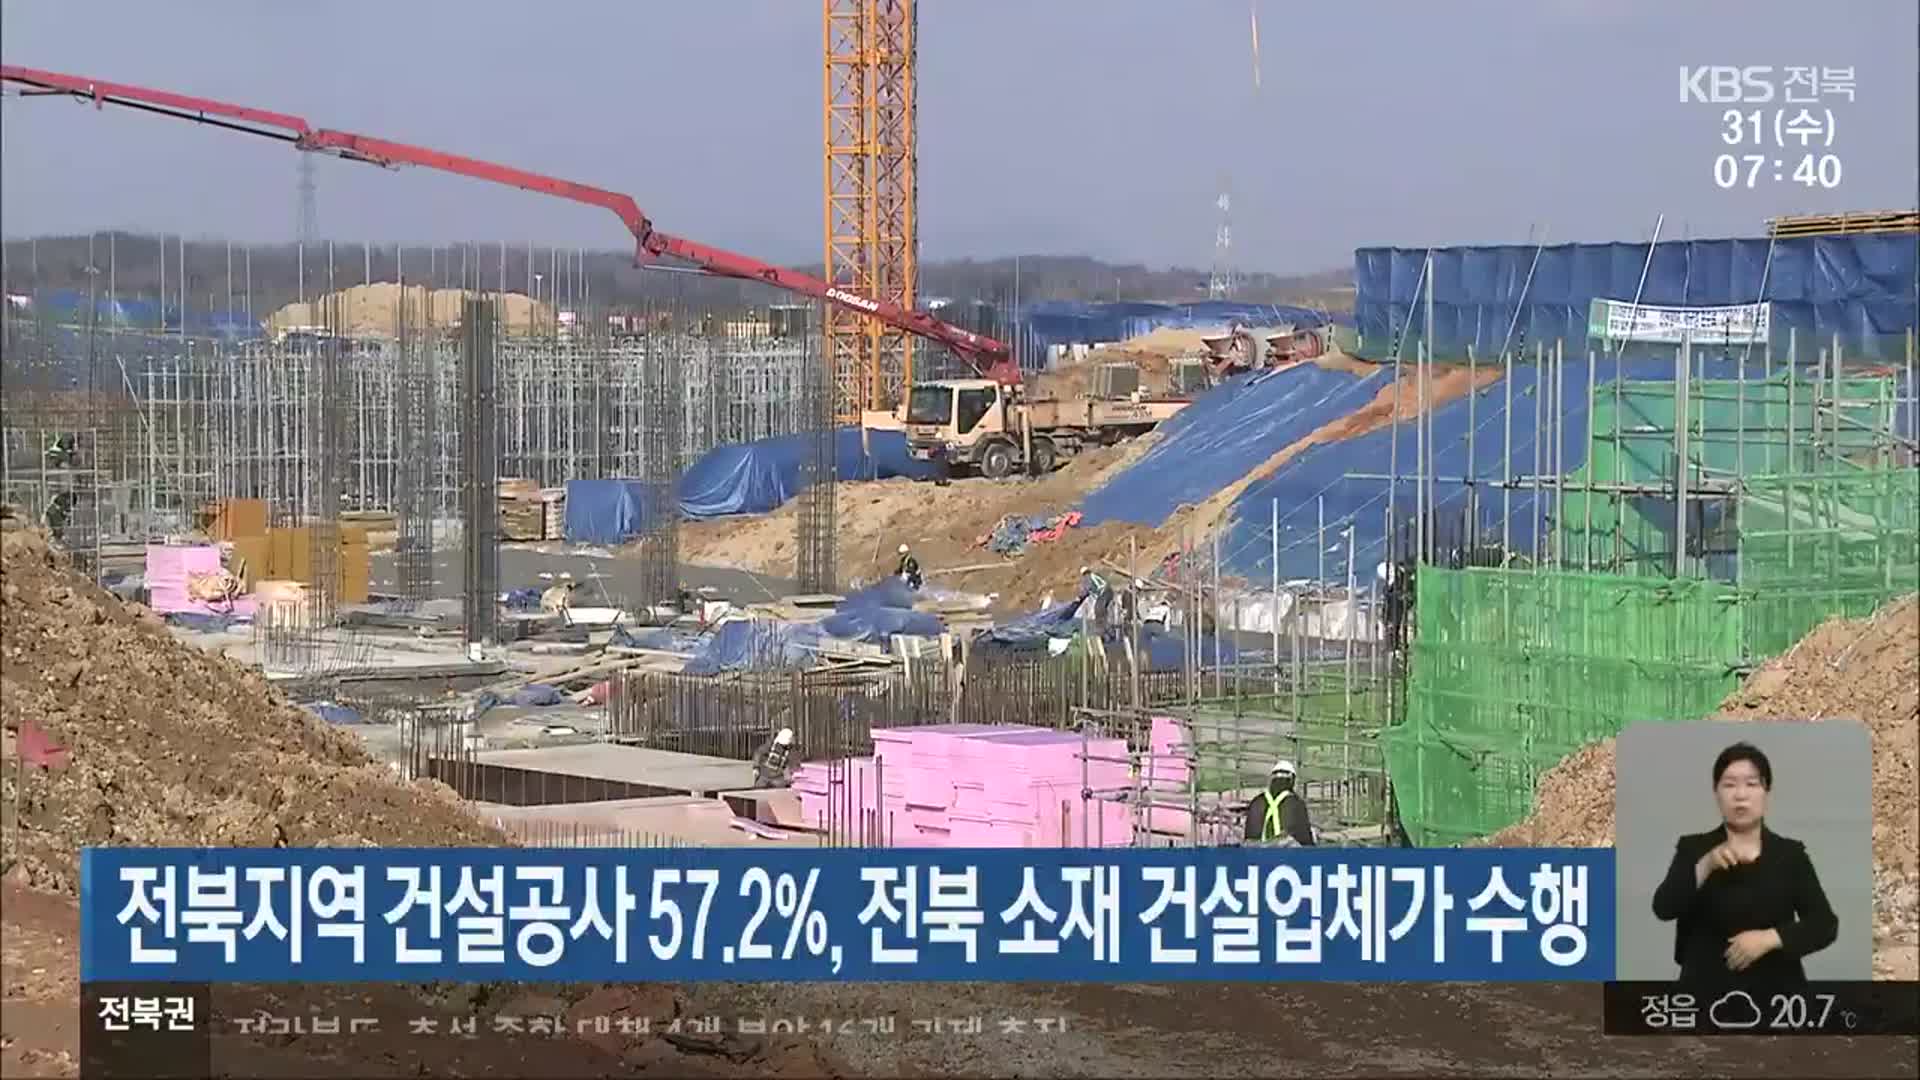 전북지역 건설 공사 57.2%, 전북 소재 건설업체가 수행